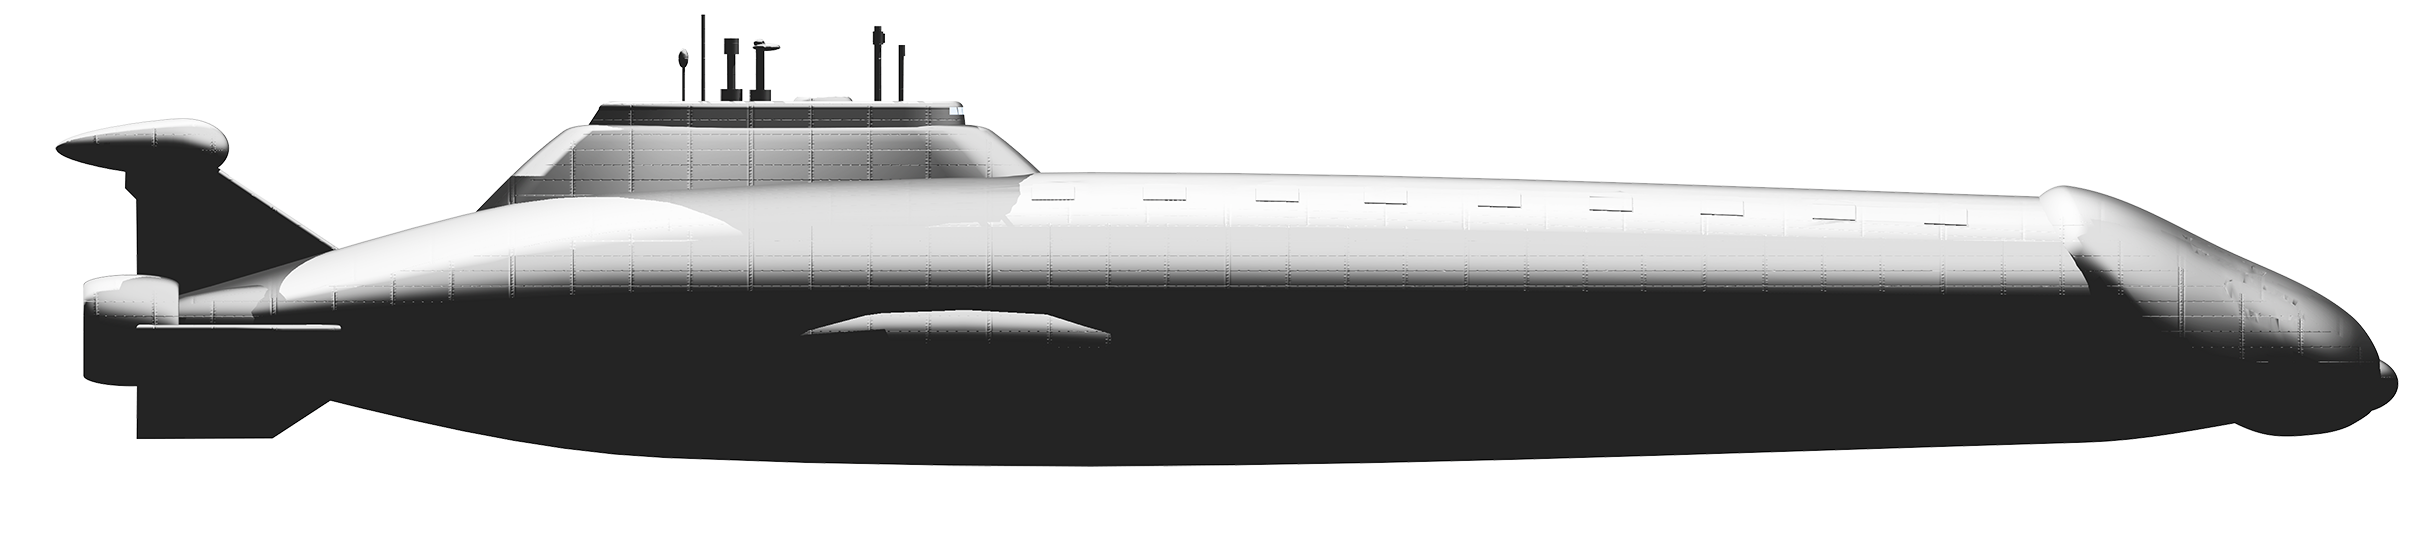 Submarine clipart nuclear submarine, Submarine nuclear